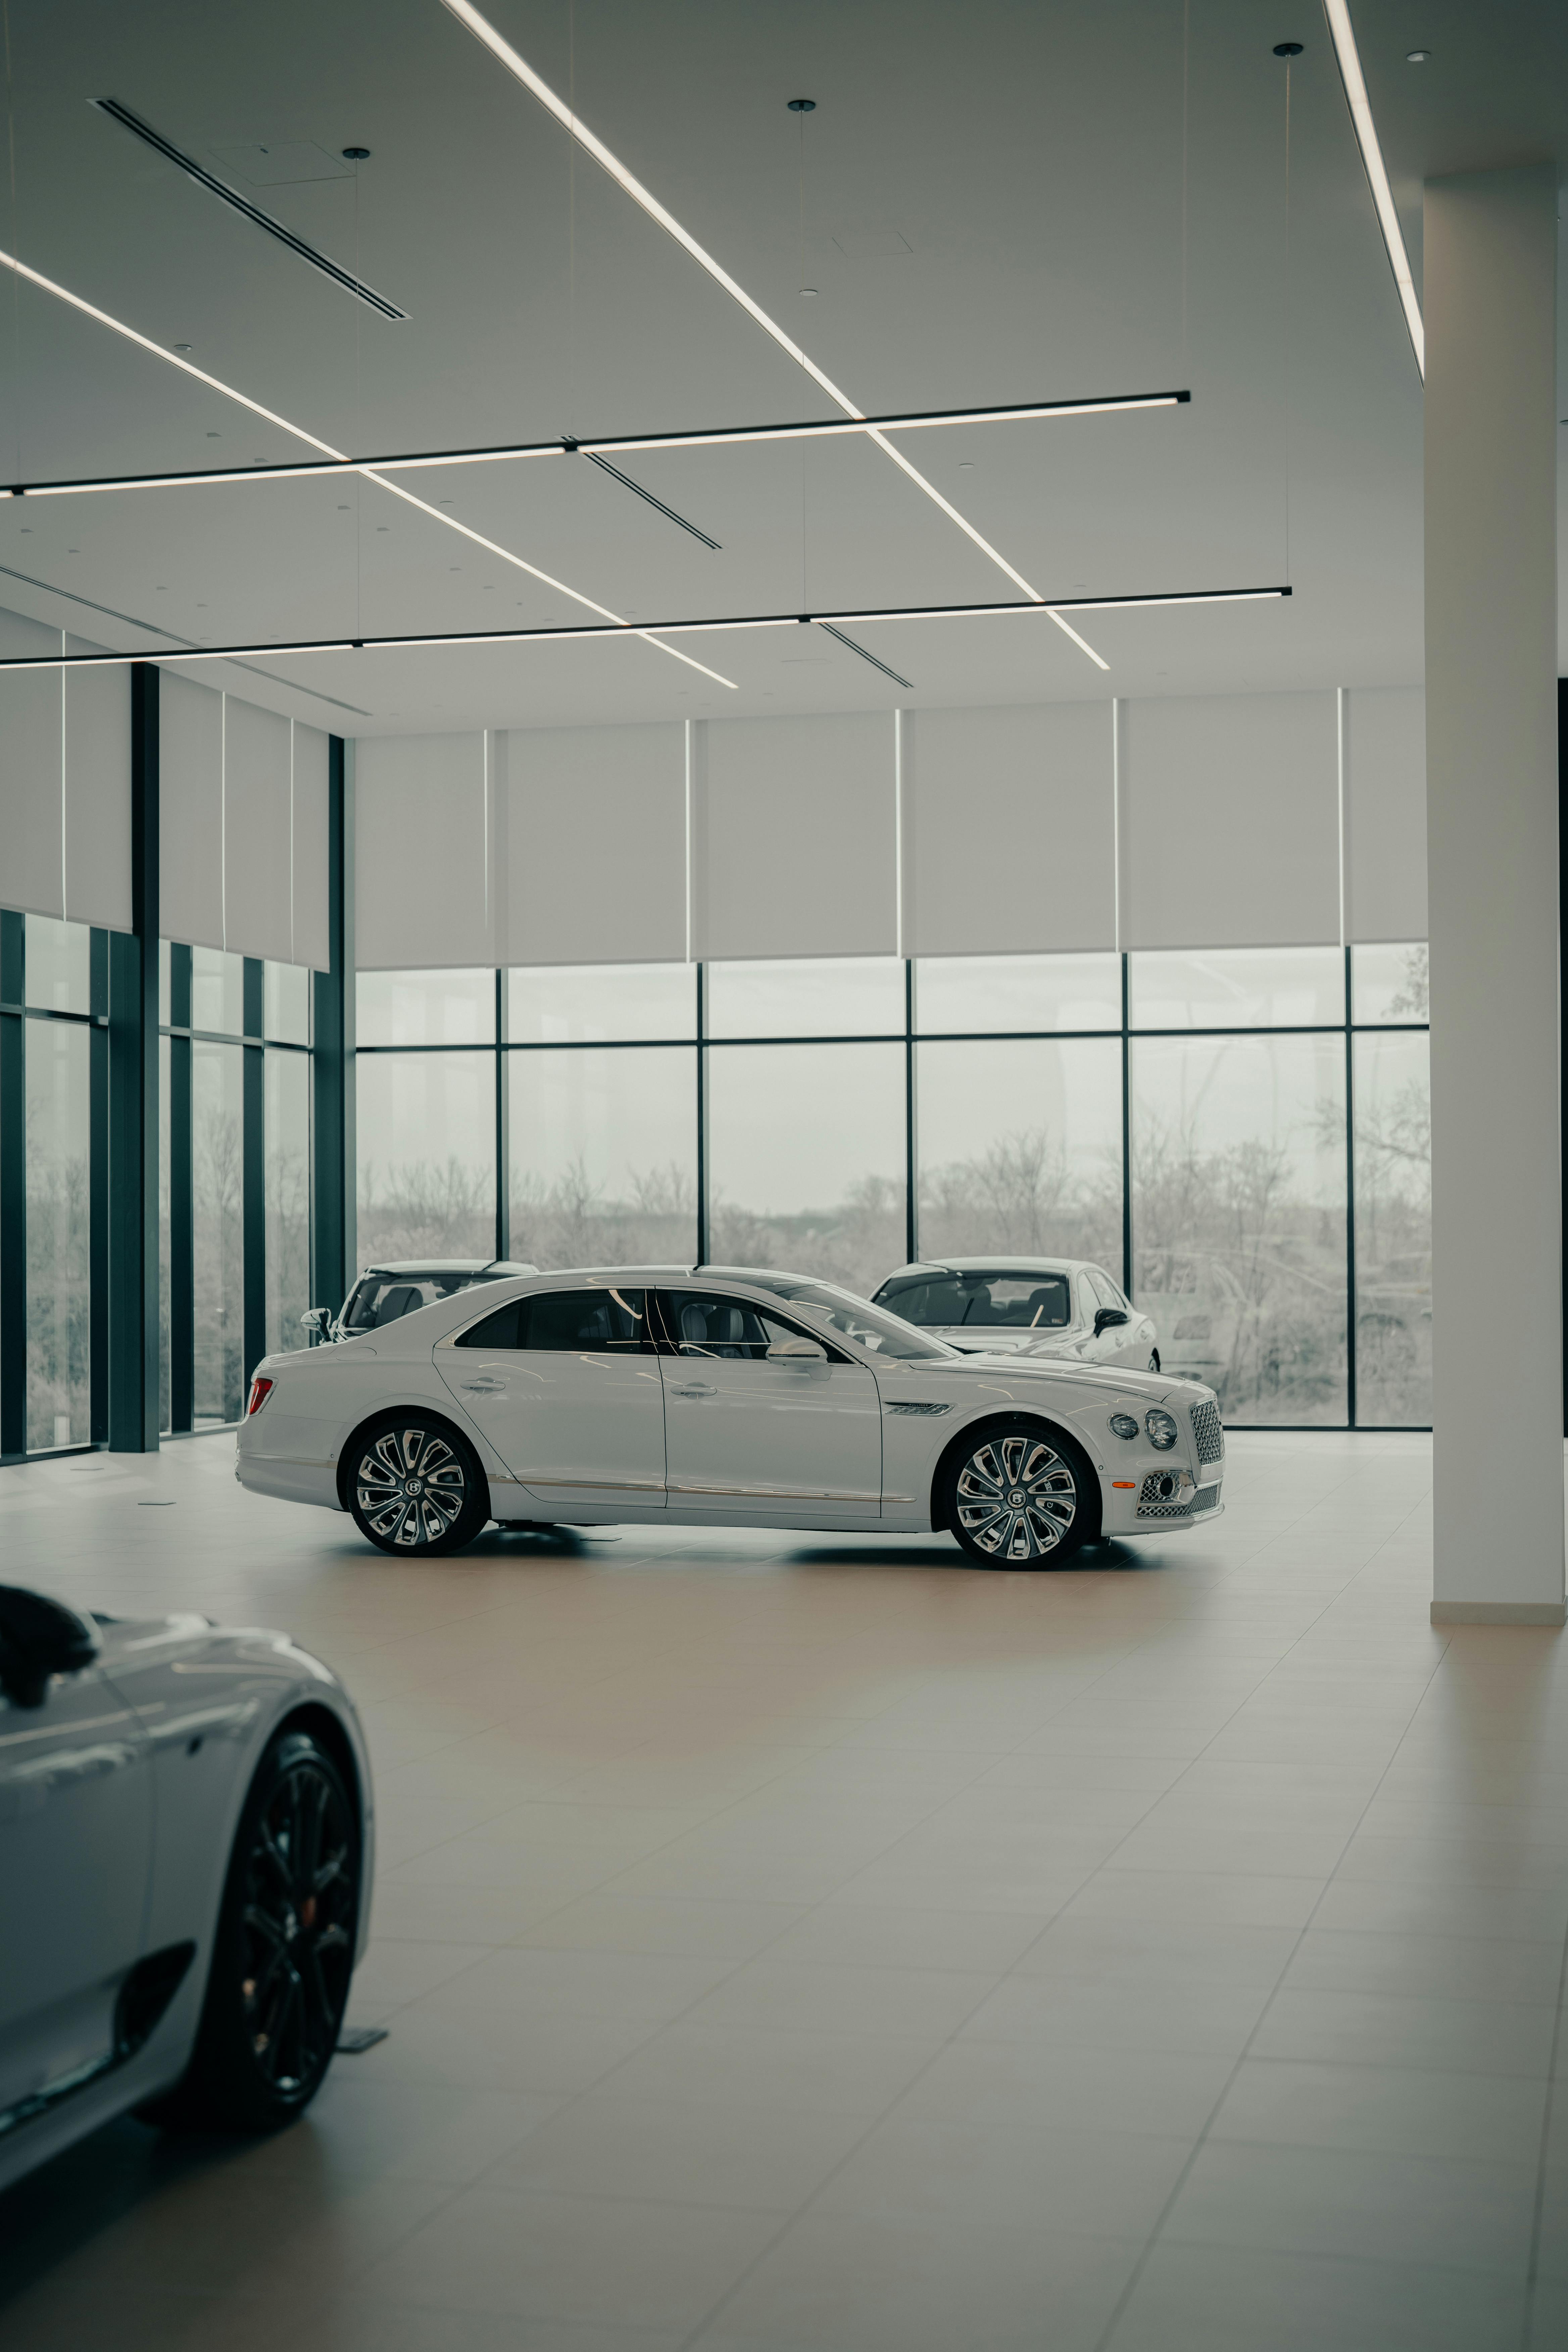 Un Automóvil blanco expuesto en una sala de exposiciones | Fuente: Pexels